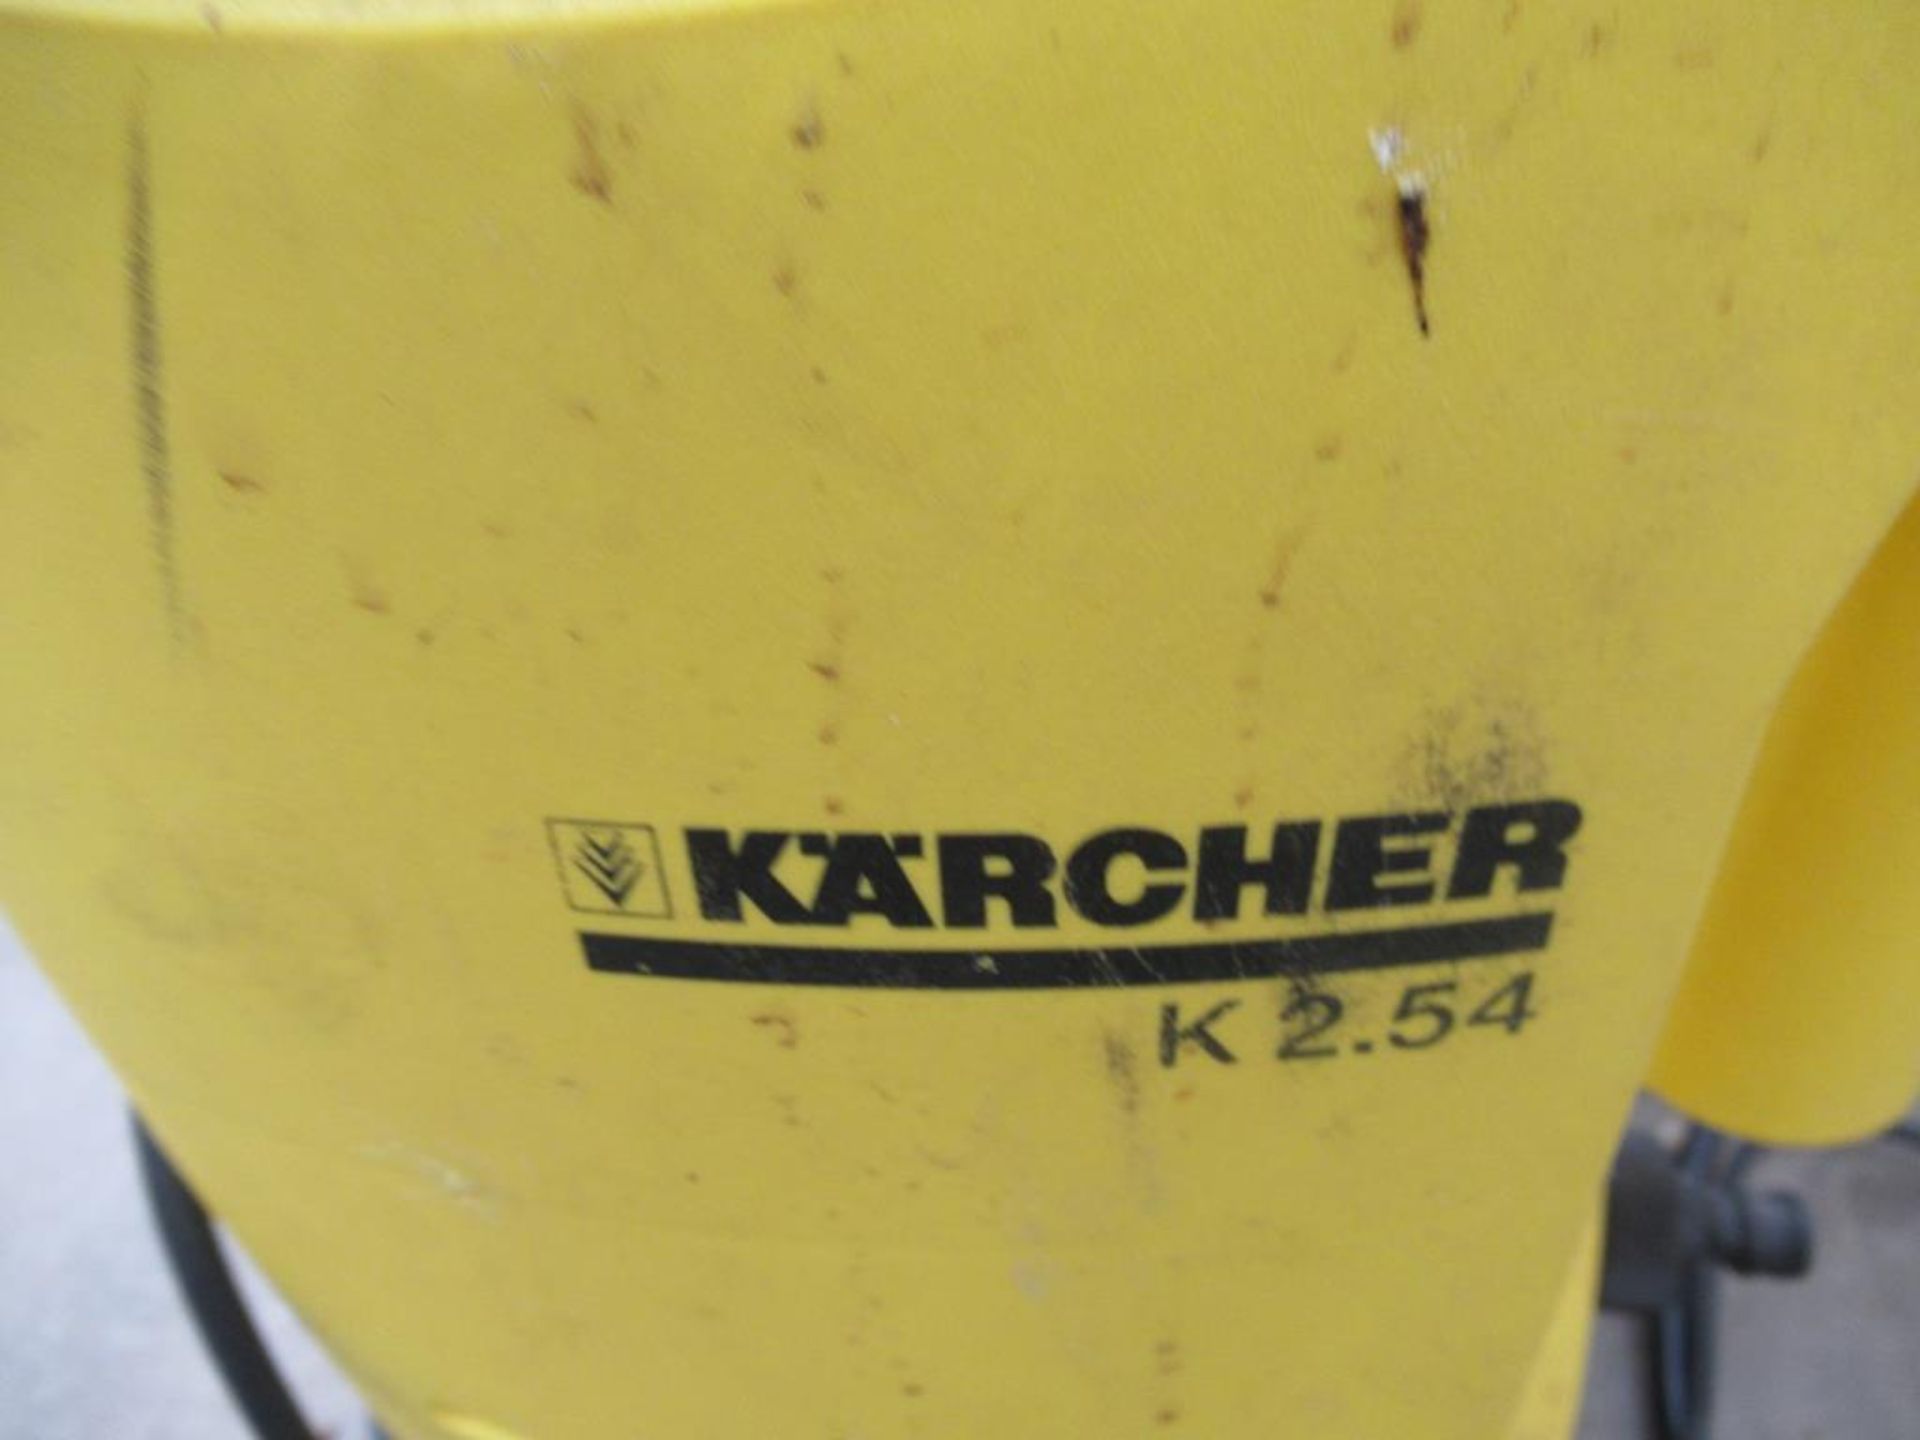 Karcher K2.54 Pressure Washer - Image 2 of 3